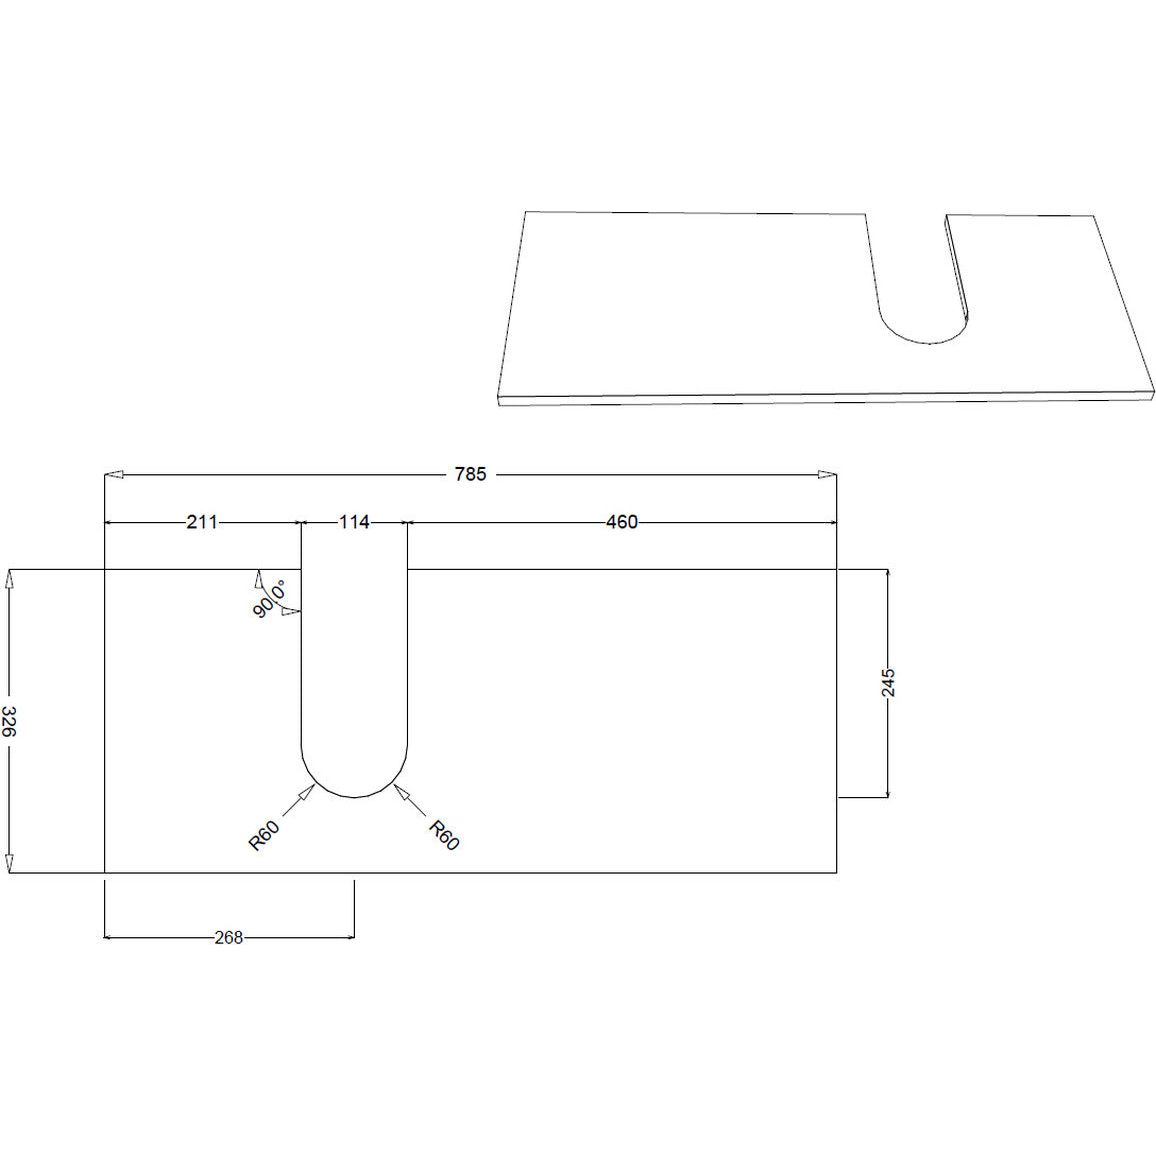 Frontage 900mm 2 Drawer Wall Hung Basin Unit (No Top) - Matt Grey